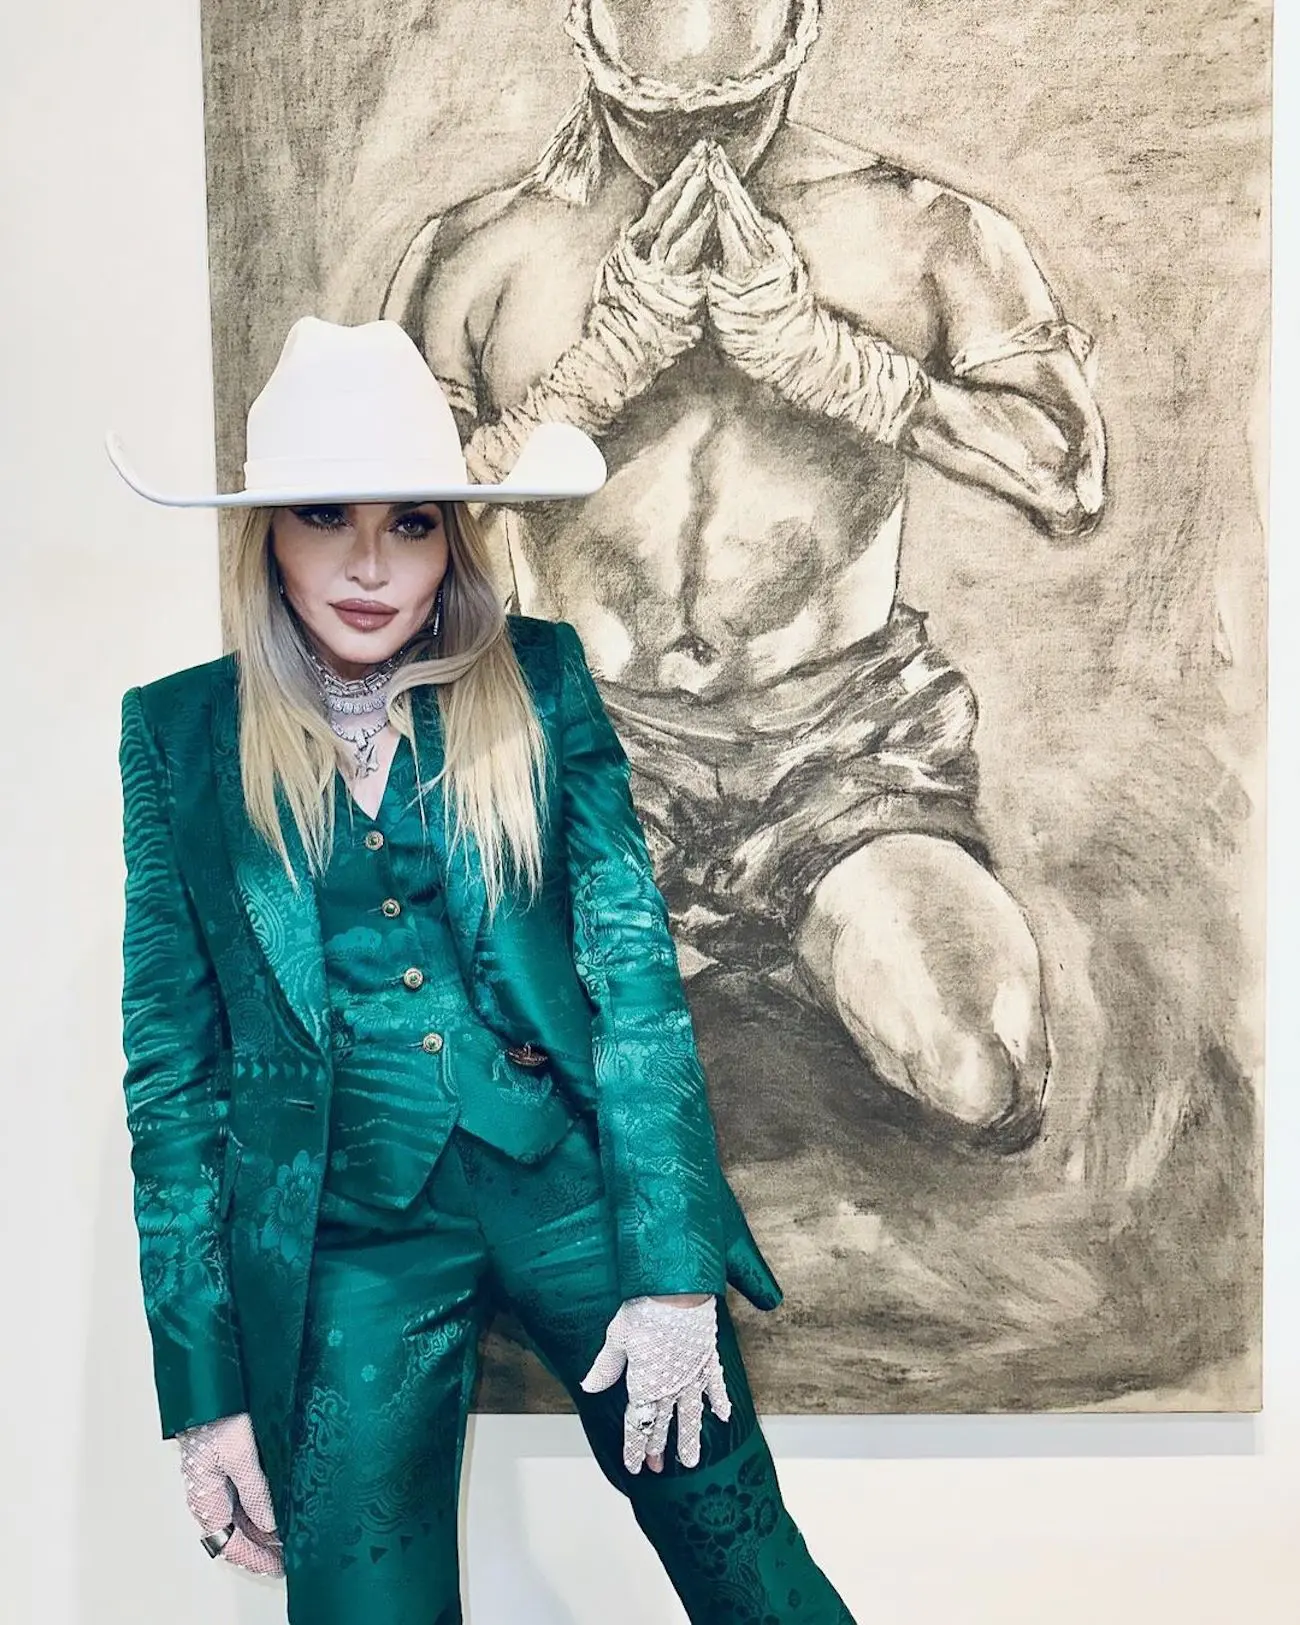 Madonna exposicion de su hijo Rocco4